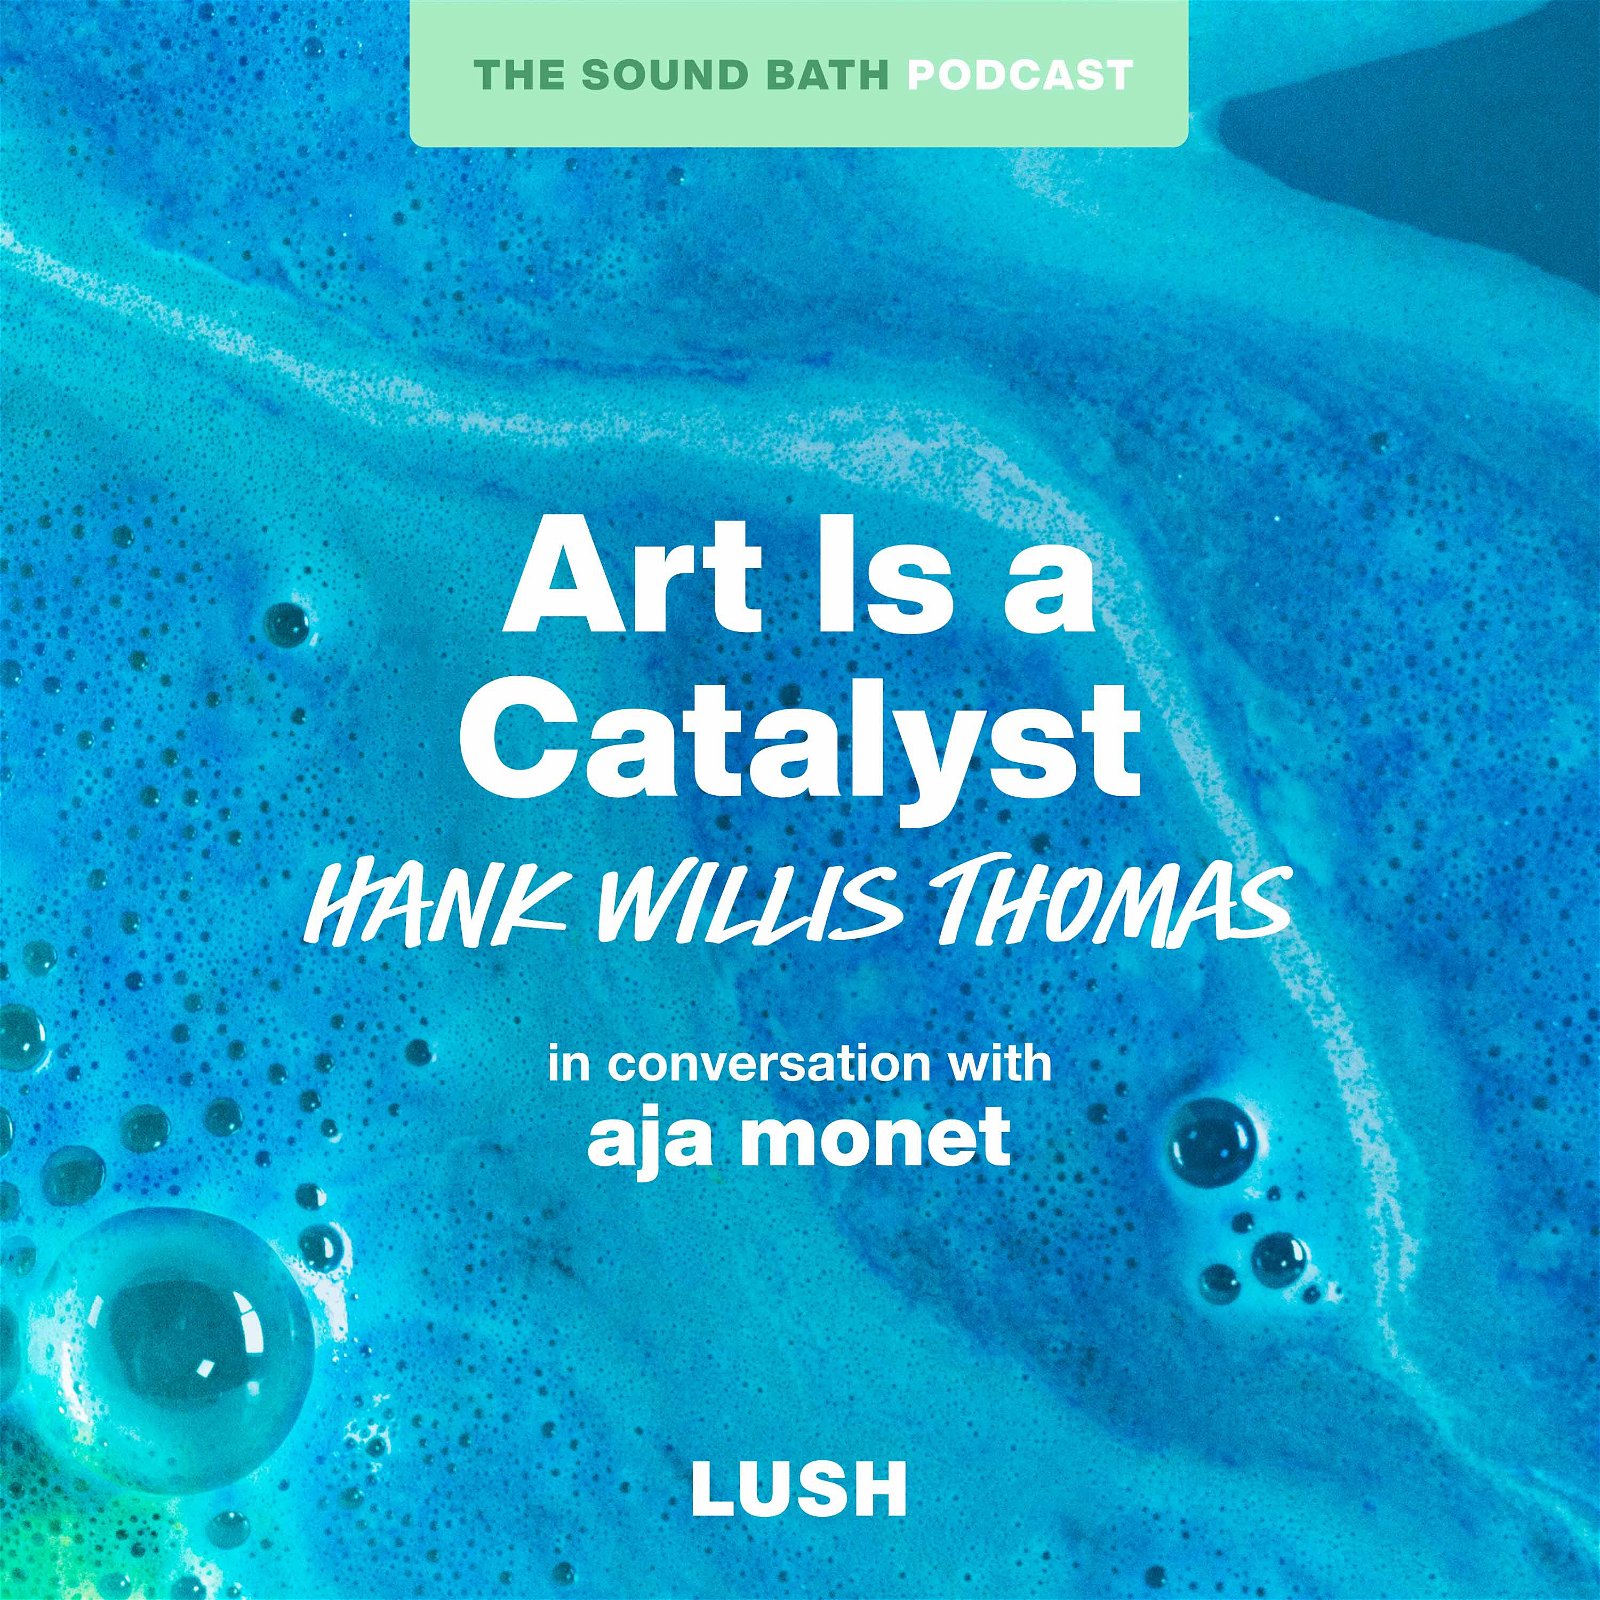 Hank Willis Thomas - Art is a Catalyst